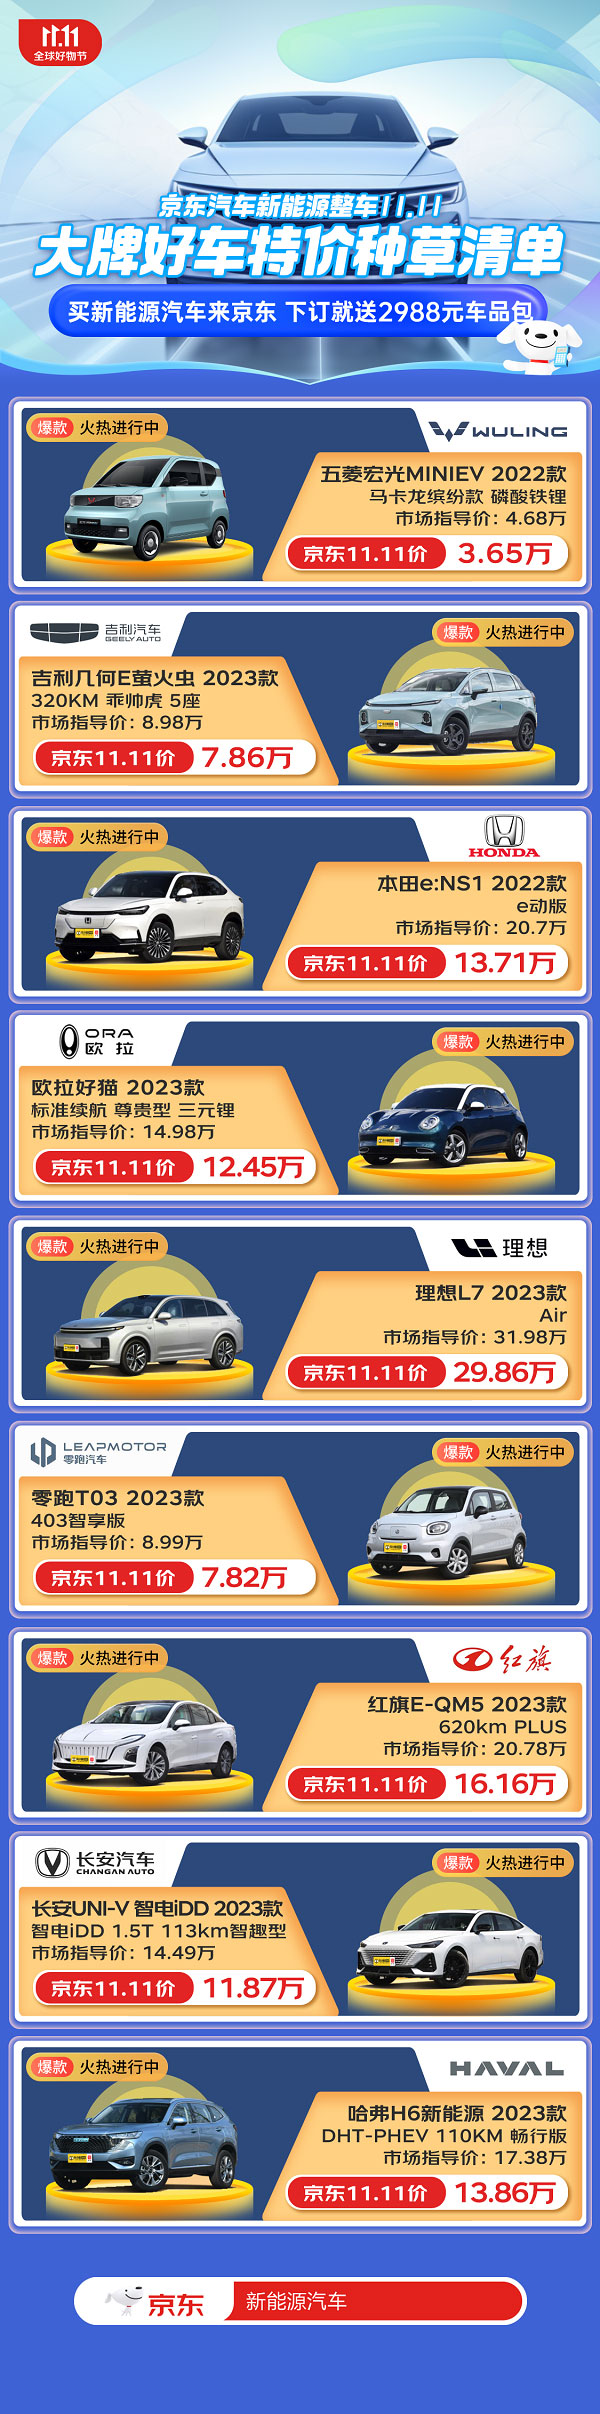 京东汽车11.11正式开启 70款新能源特价车型低至5折起